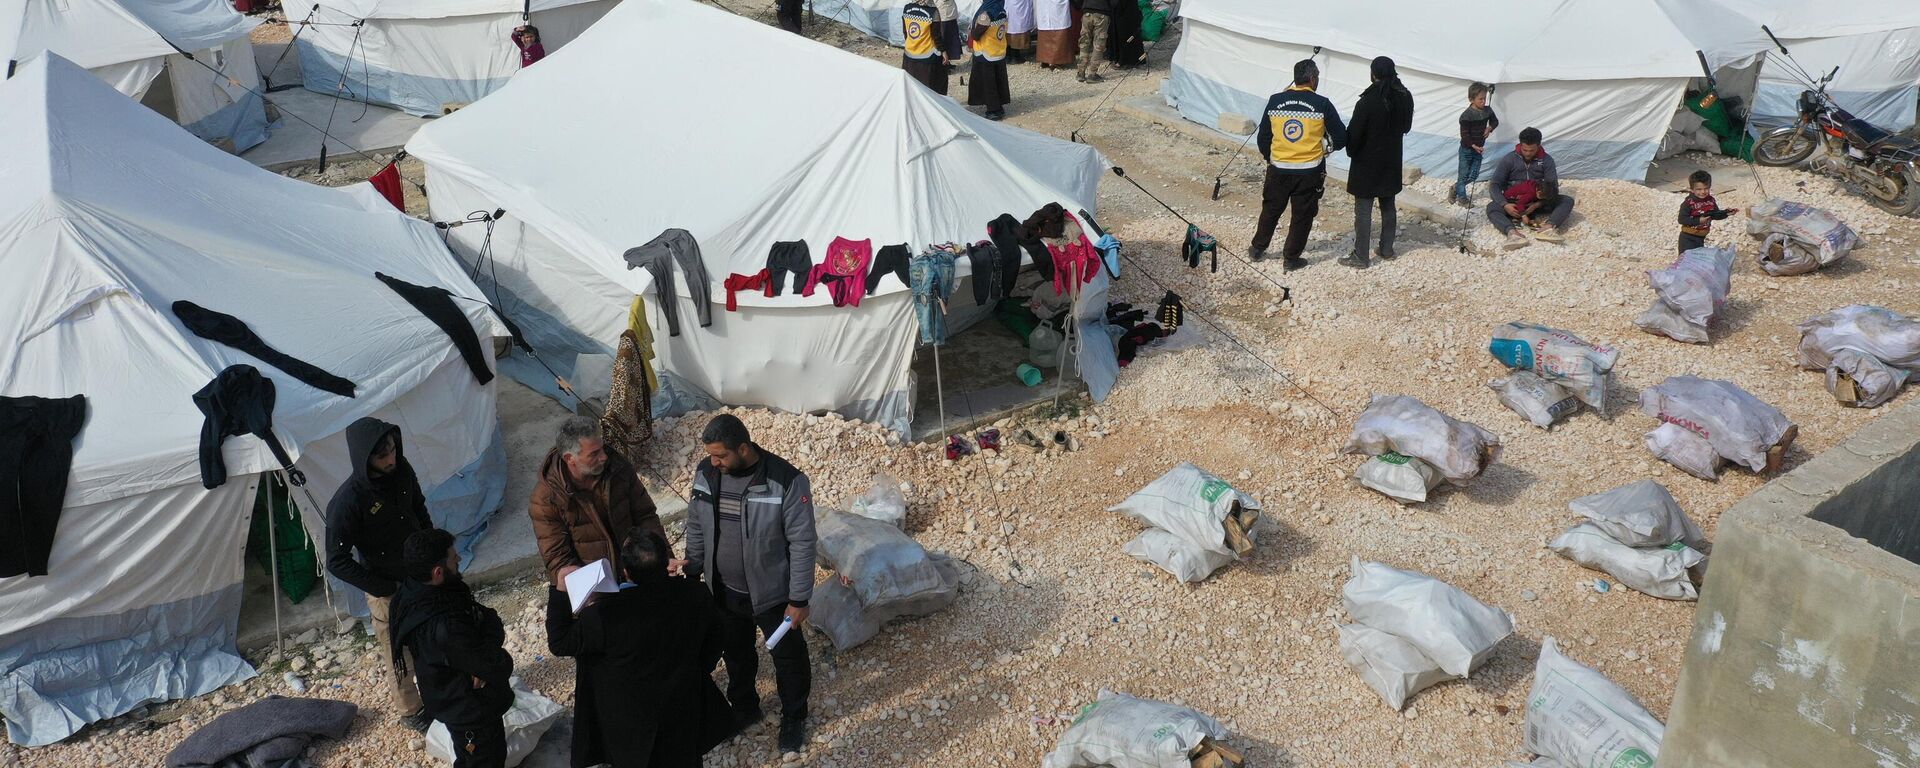 Esta vista aérea muestra hileras de tiendas instaladas por voluntarios para albergar temporalmente a personas que se han quedado sin hogar tras el terremoto en la provincia noroccidental de Idlib, el 11 de febrero de 2023 - Sputnik Mundo, 1920, 12.02.2023